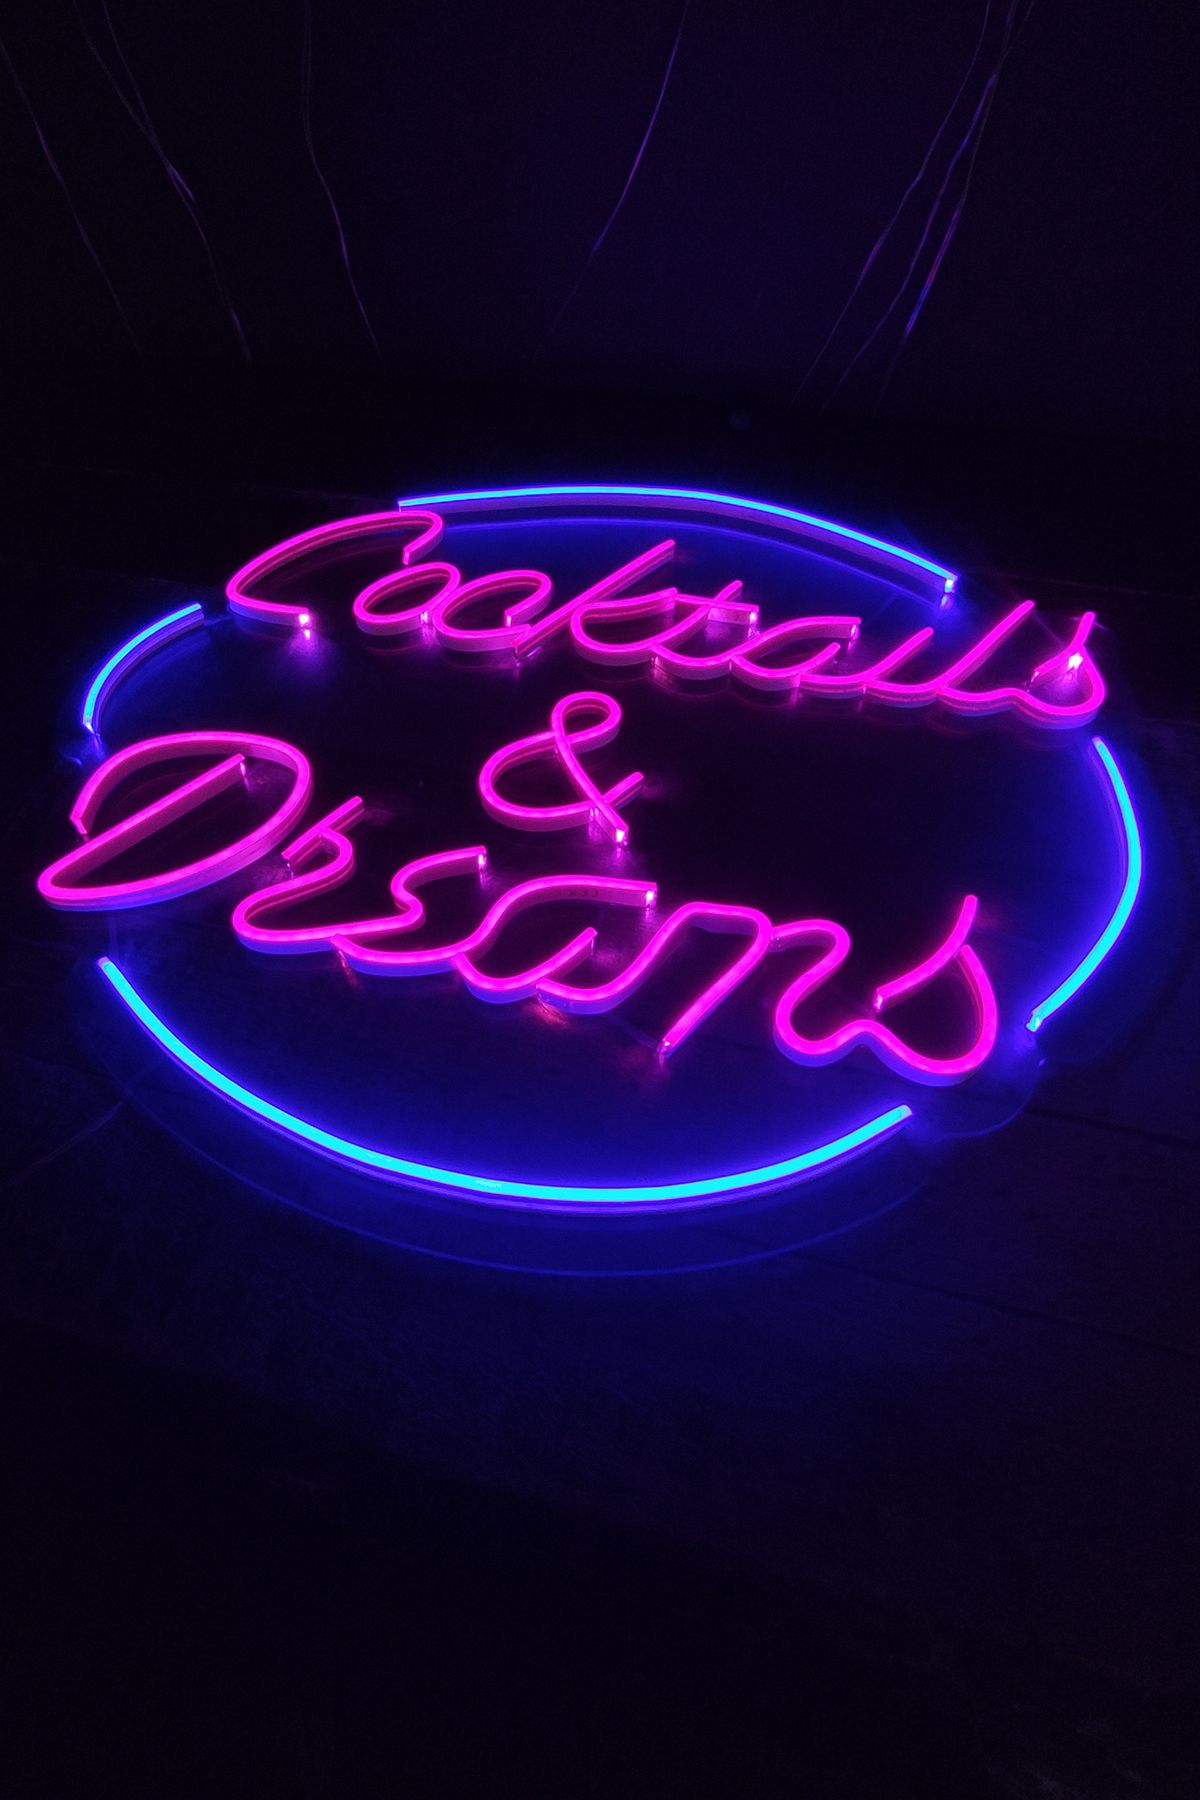 Işıklı Cocktails Dreams: Neon LED Tabela Duvar Dekorasyon Ürünü 